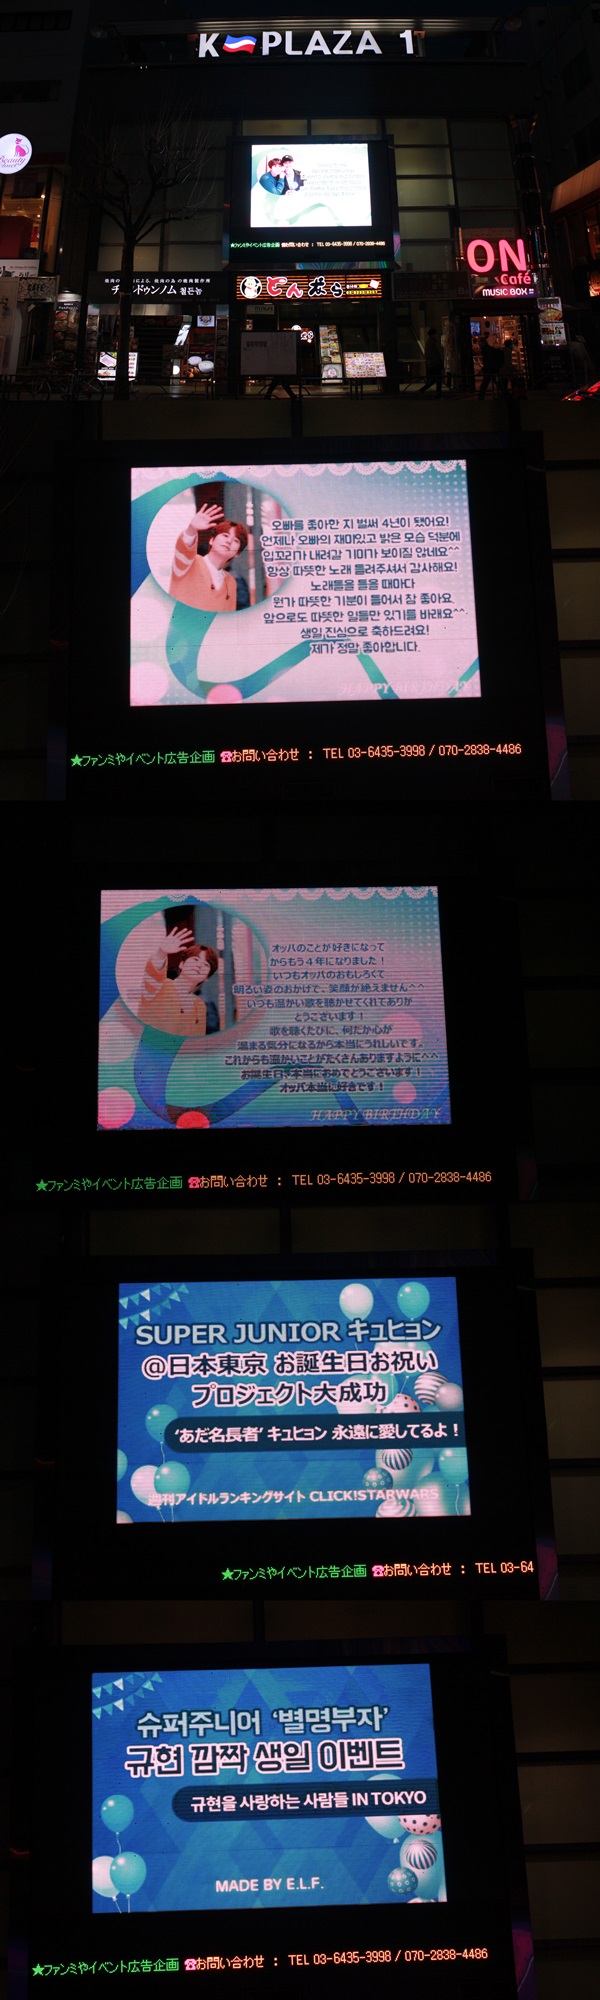 클릭스타워즈가 슈퍼주니어 규현 생일 서포트 인증사진을 공개했다. 이 전광판은 일본 도쿄에 위치했다. /클릭스타워즈 제공